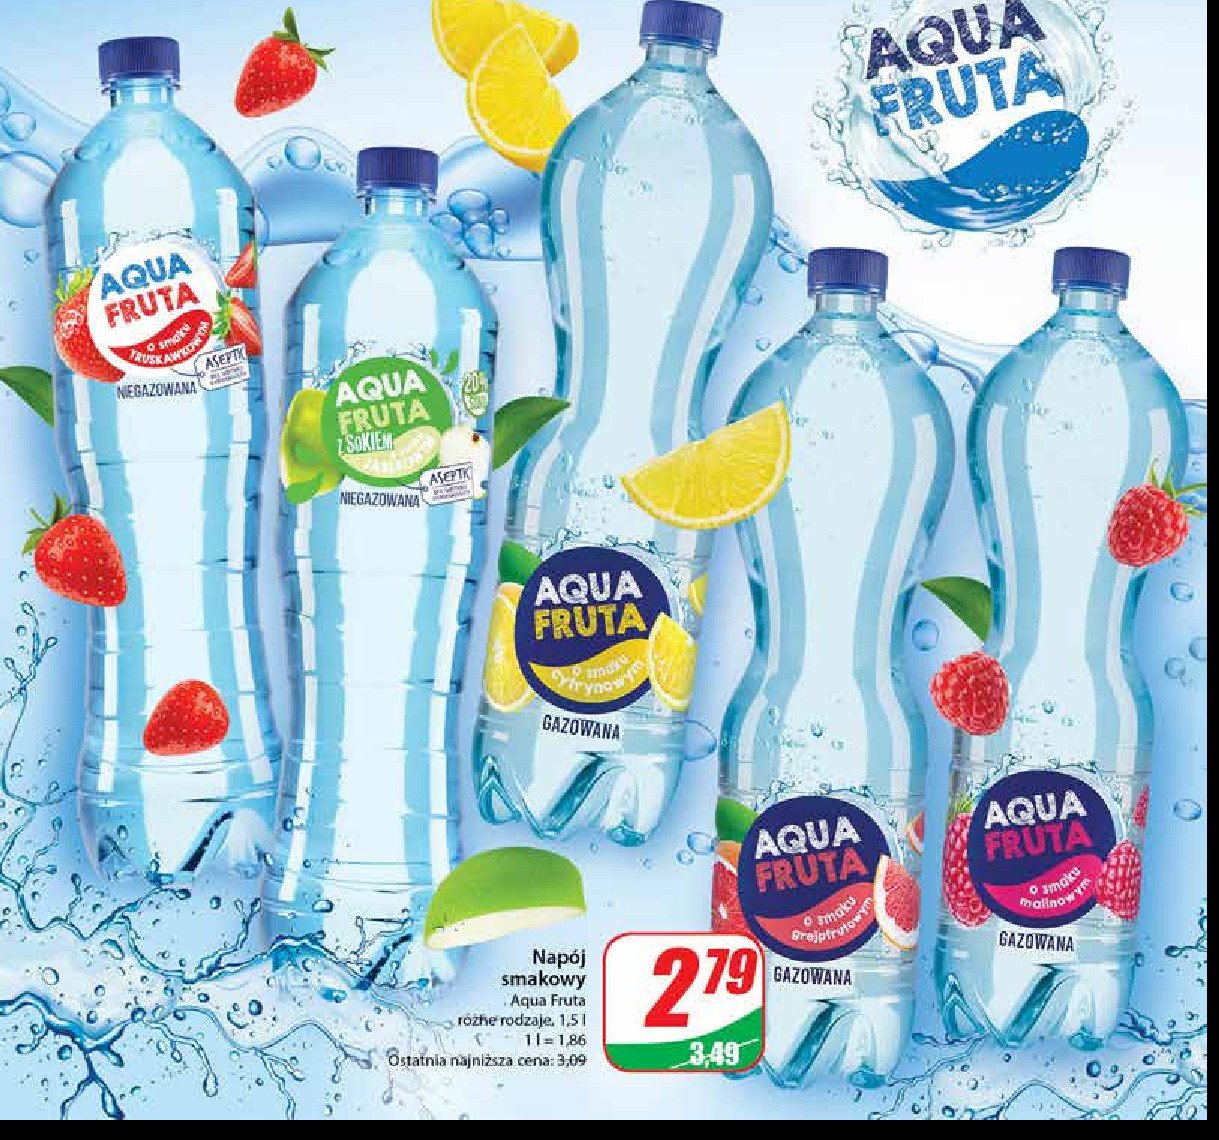 Woda cytrynowa Aqua fruta promocja